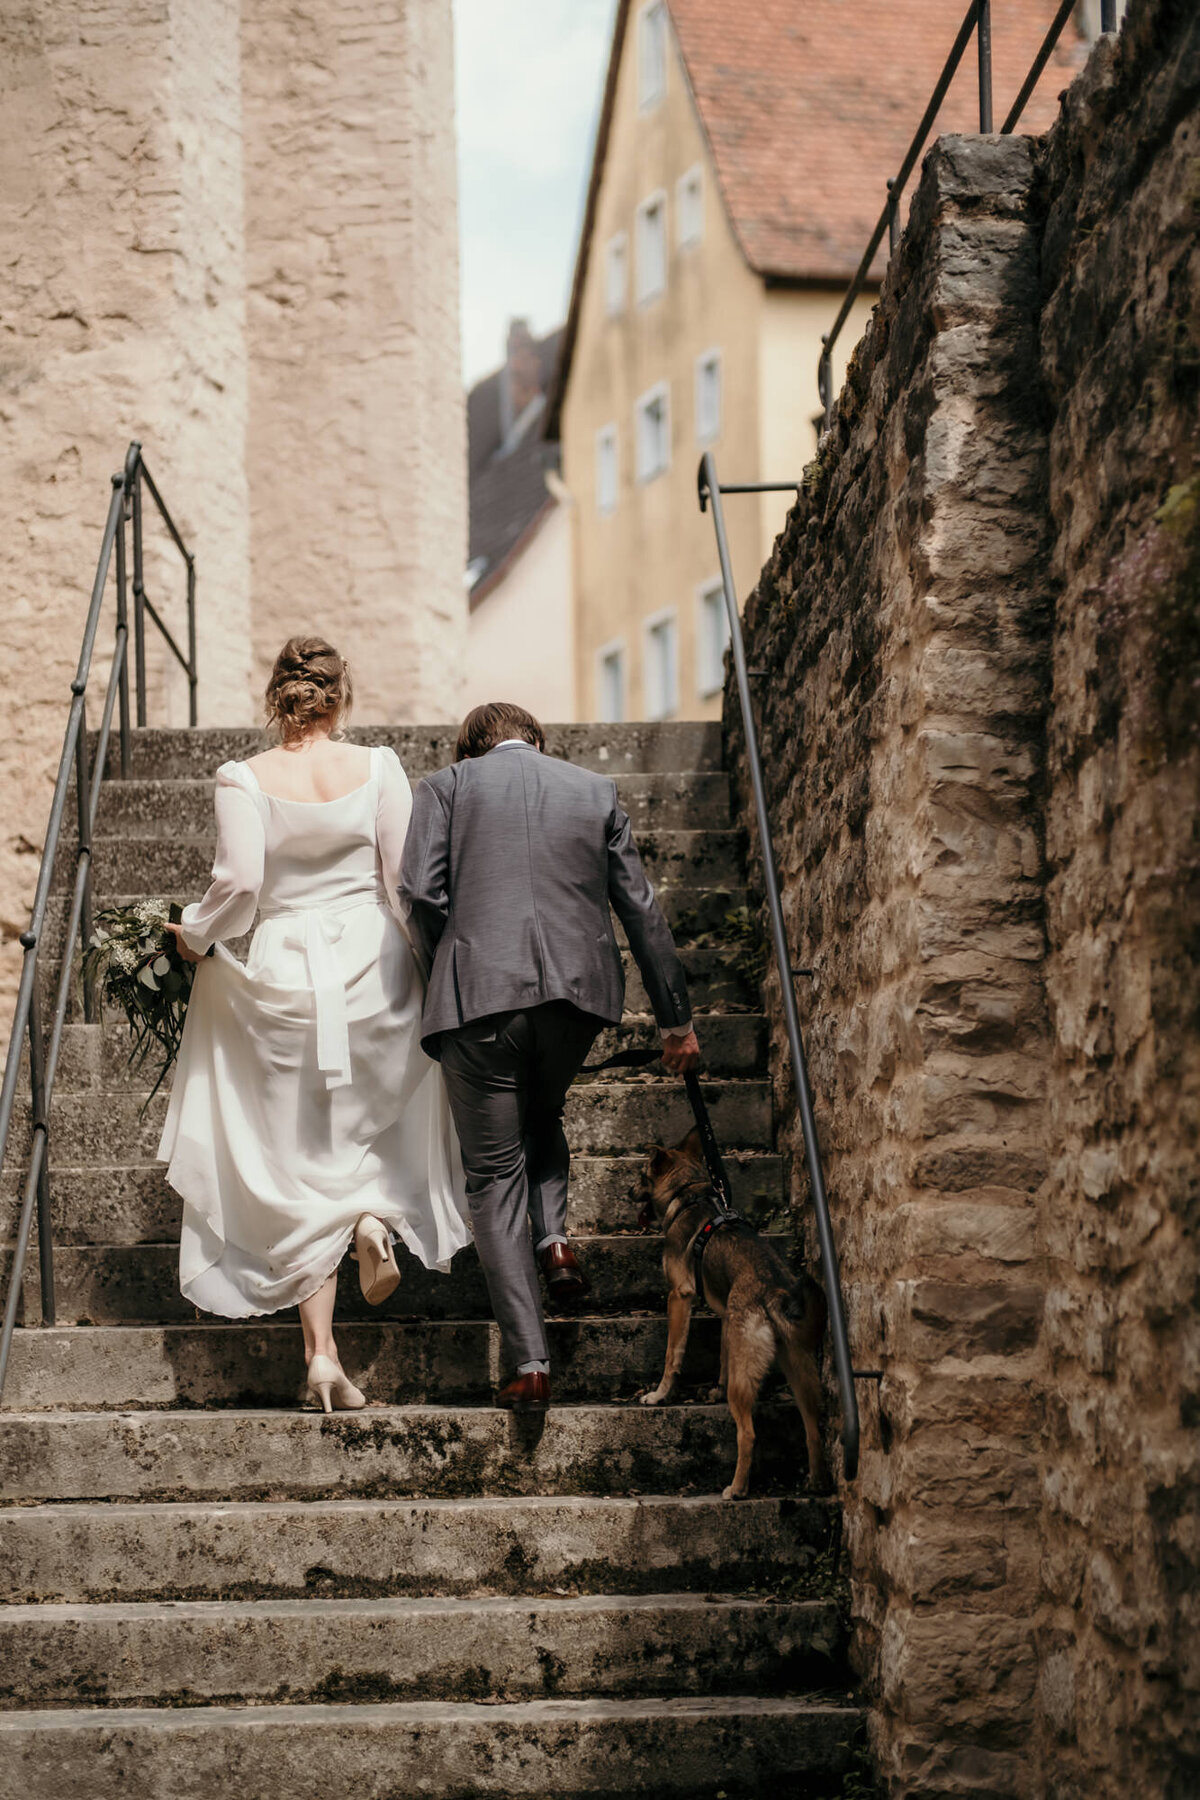 Das Hochzeitspaar läuft zusammen mit ihrem Hund eine Steintreppe hinauf.